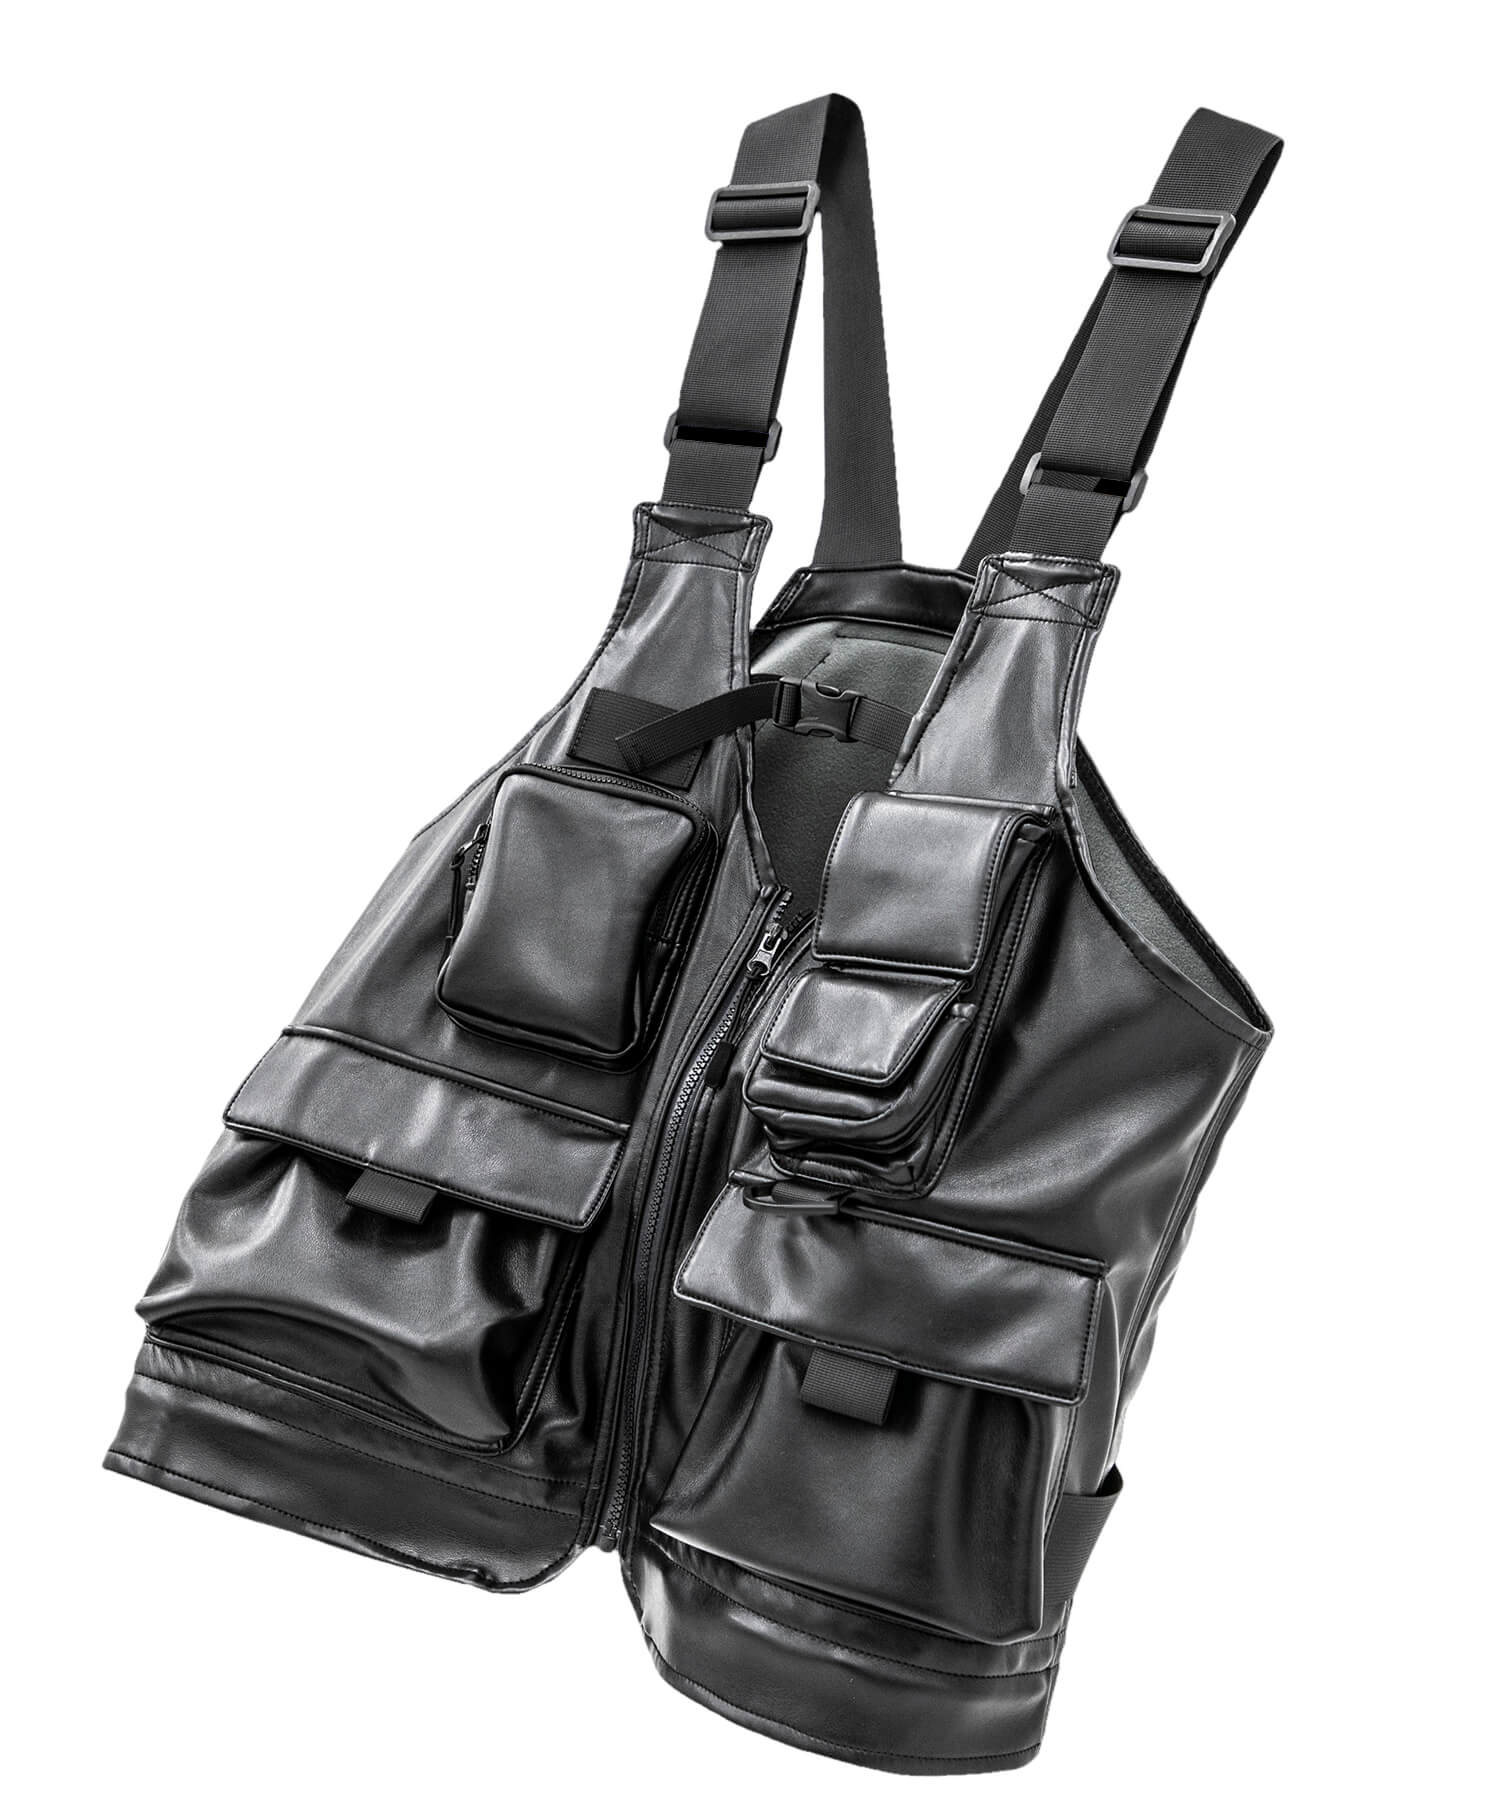 新品未使用//LORINZA×studious leather bag vest